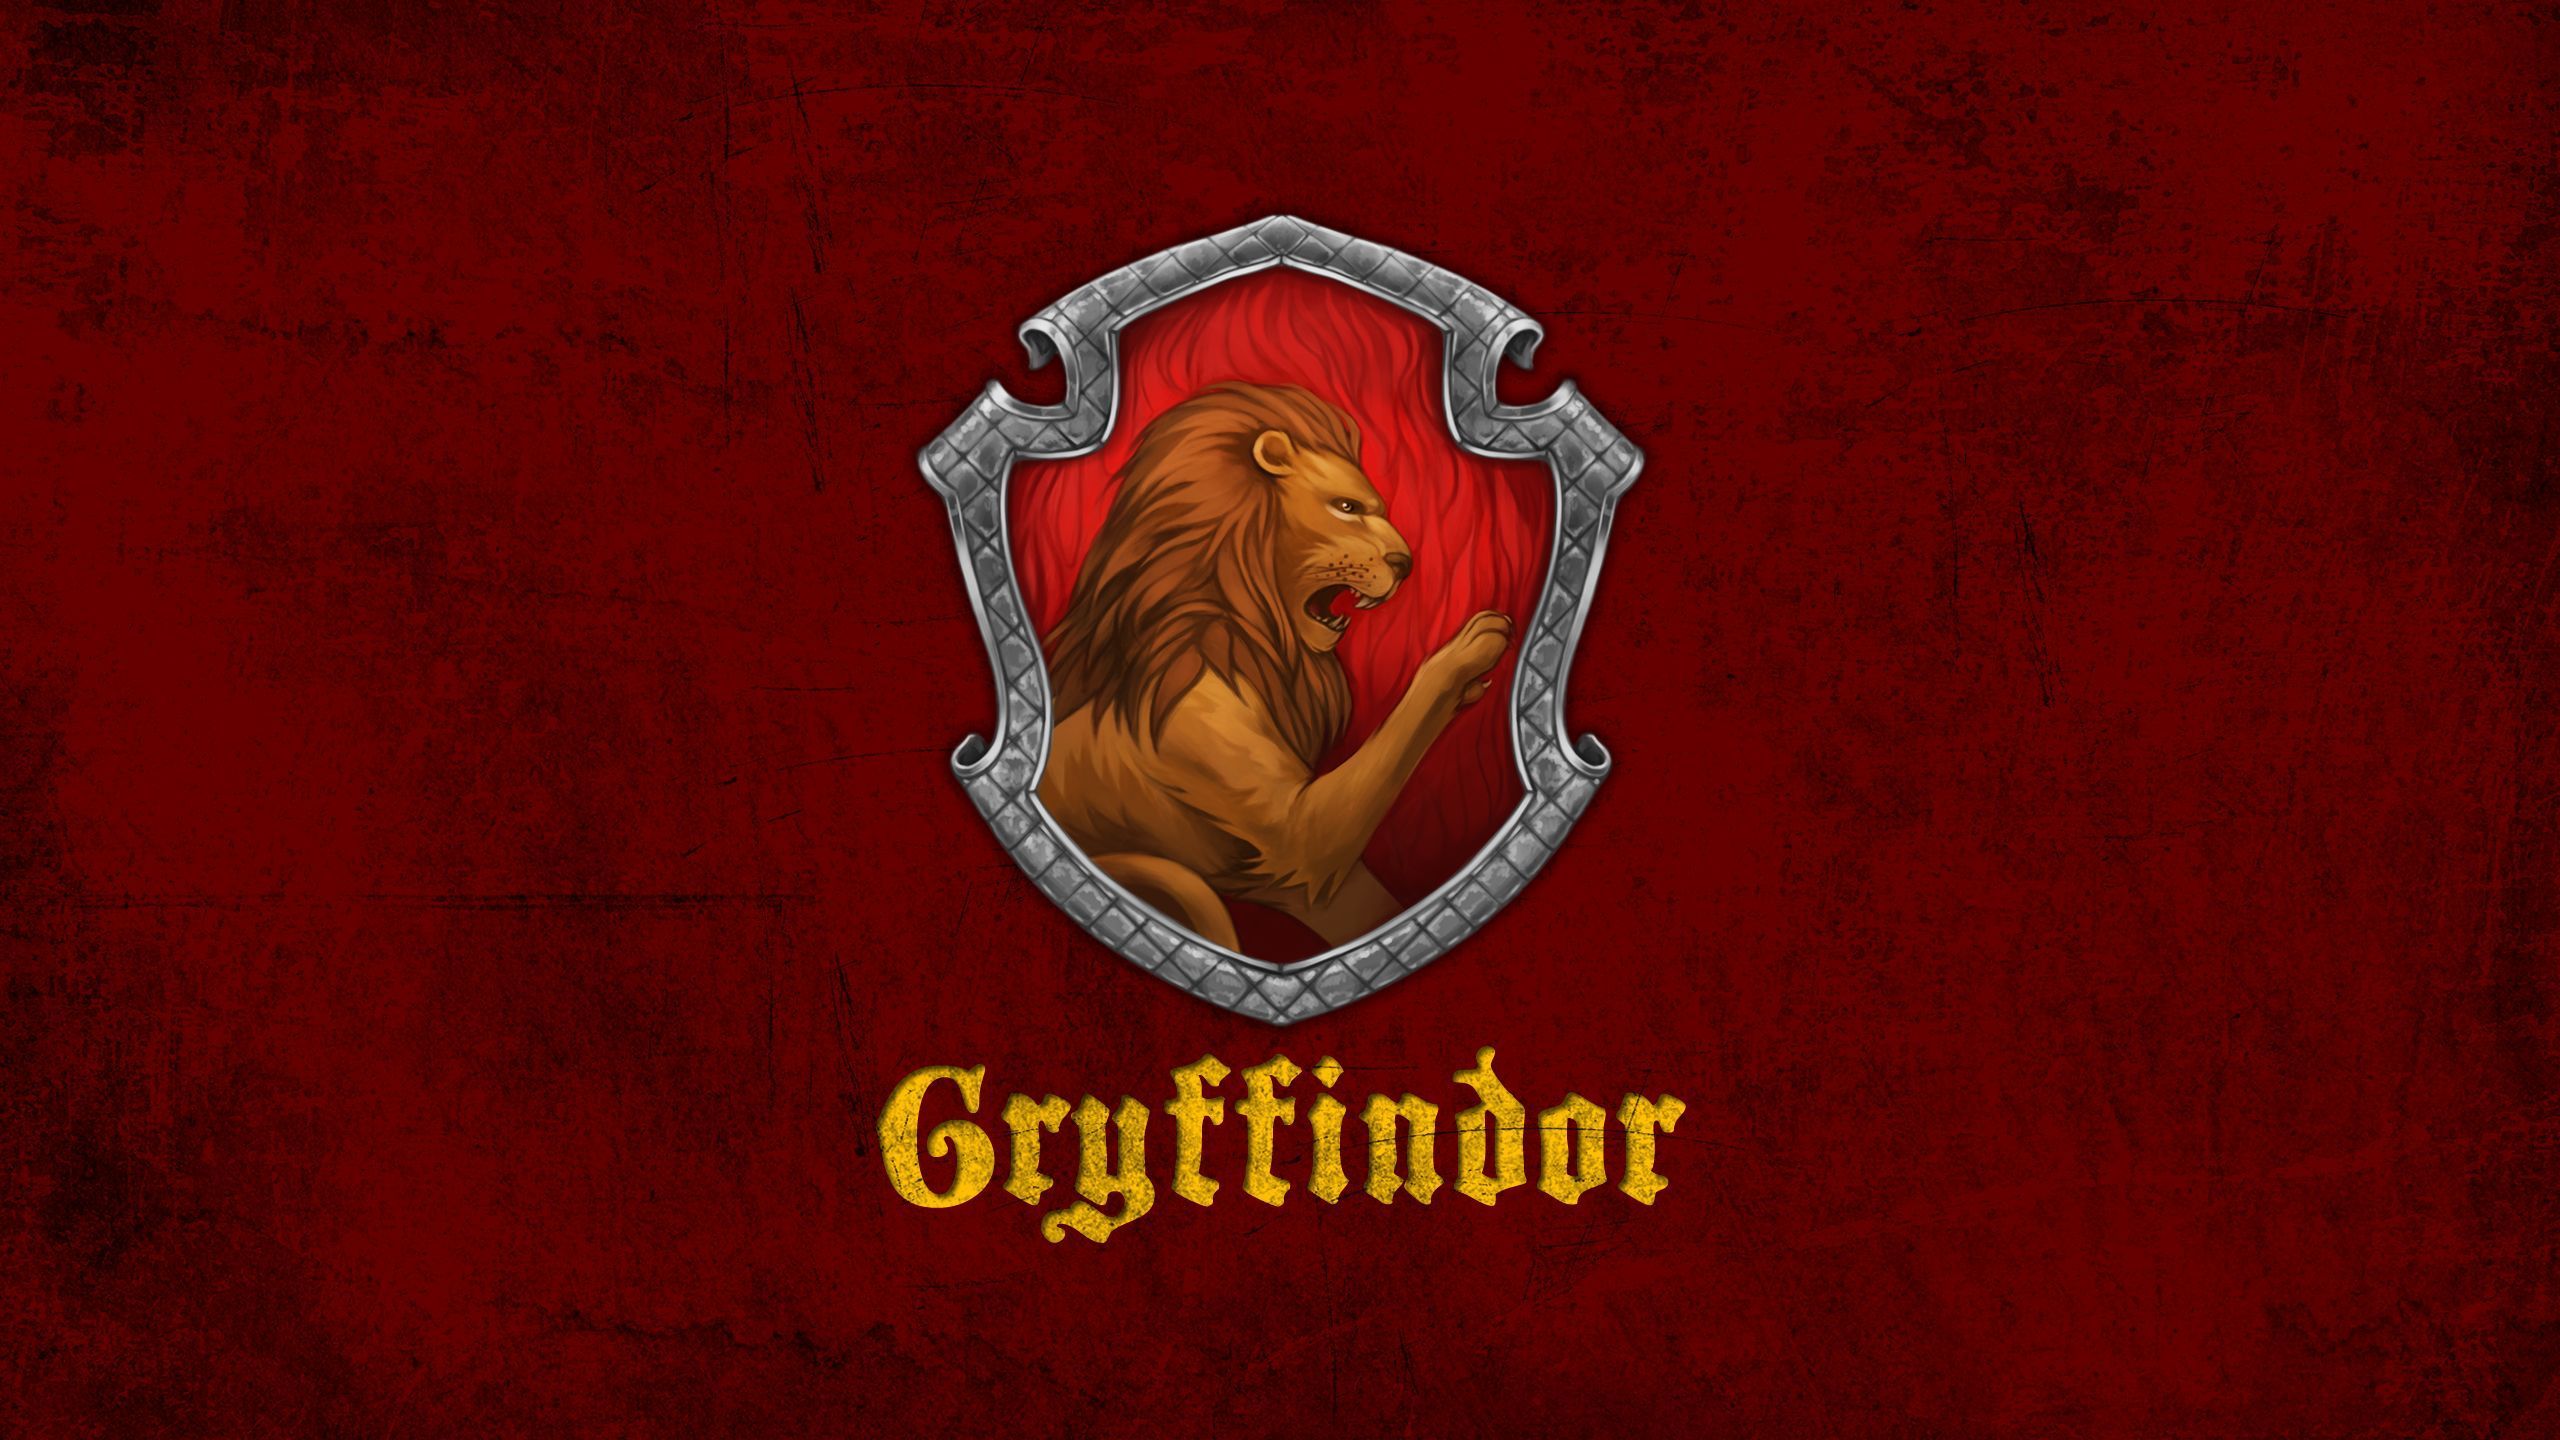 Gryffindor Wallpaper Free Gryffindor Background